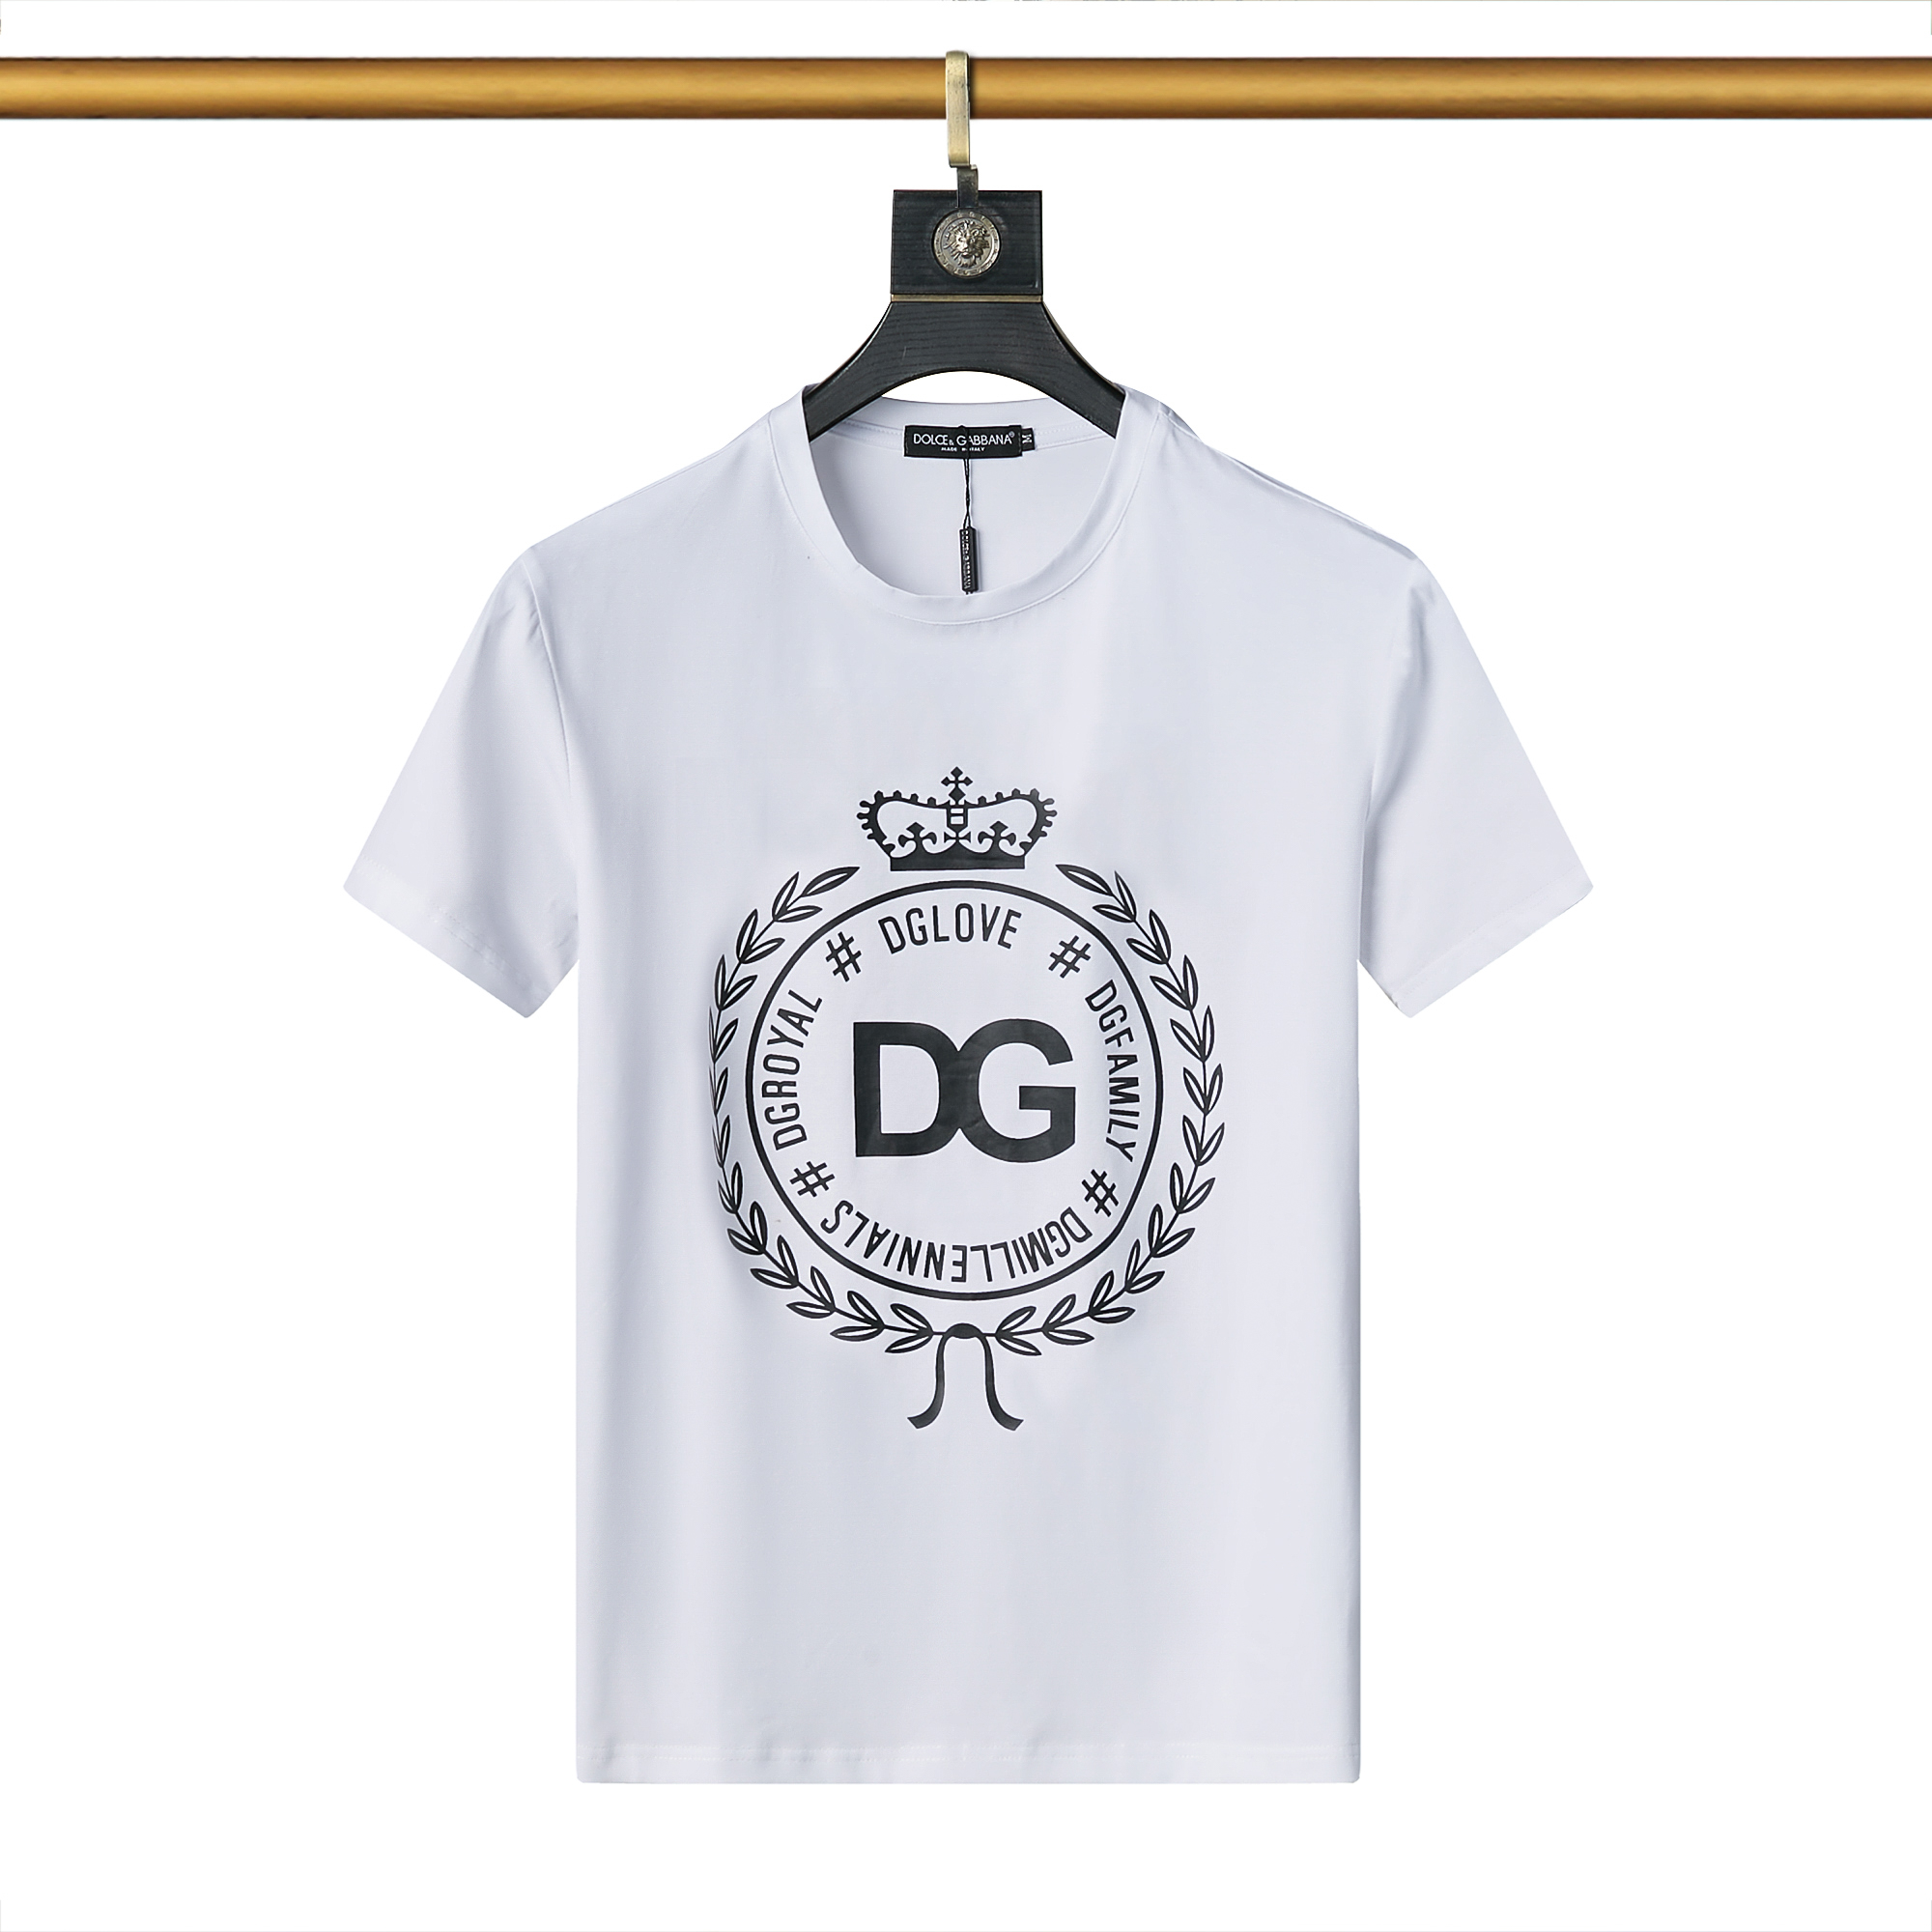 D&G Crew Neck Short Sleeve T Shirts For Men # 265978, cheap Dolce&Gabbana Men's Short sleeve, only $25!